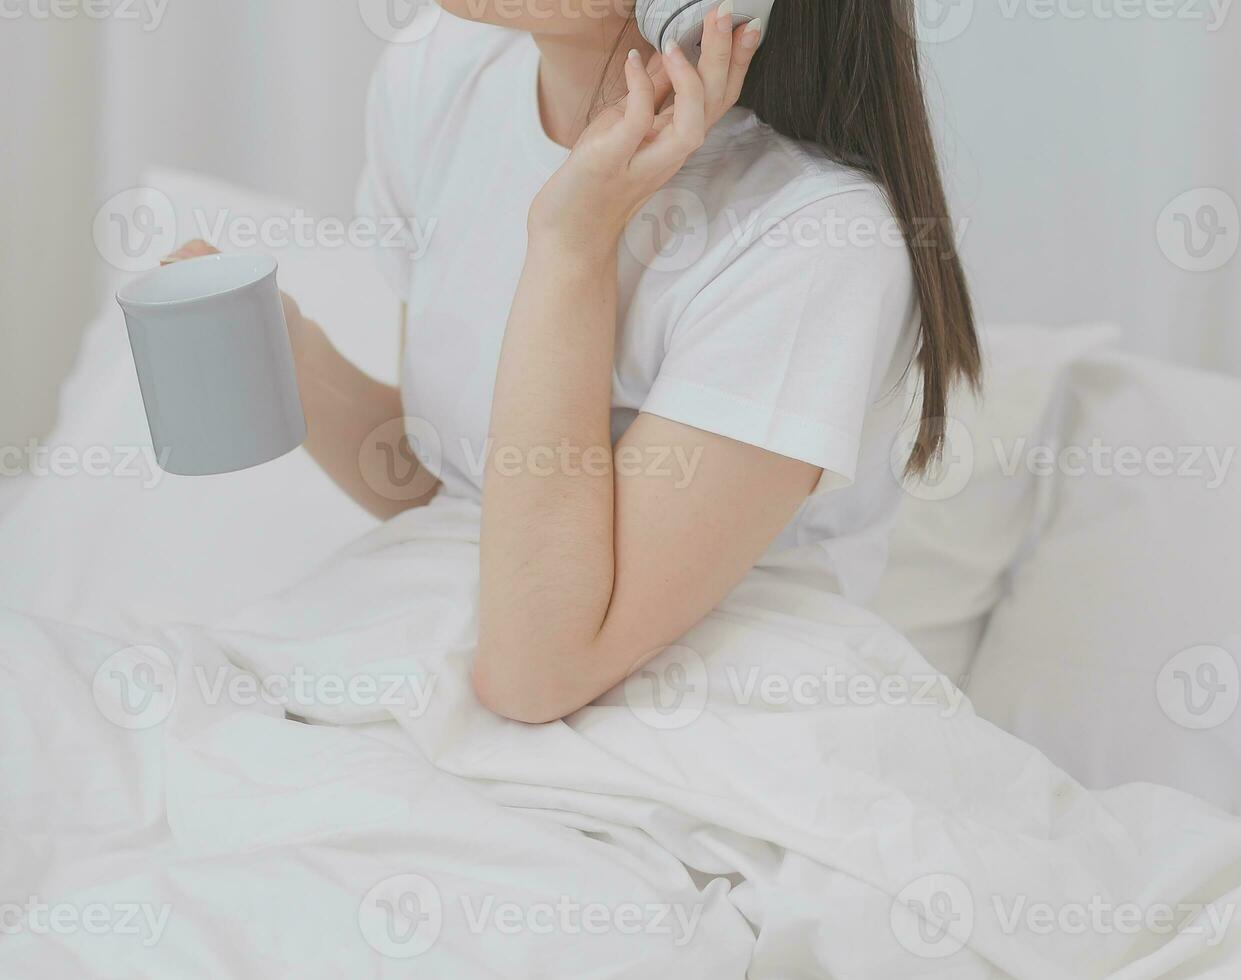 eficiente joven milenario niña sentado en un cama en el mañana, usos ordenador portátil computadora y come croissants y bebidas café para desayuno foto